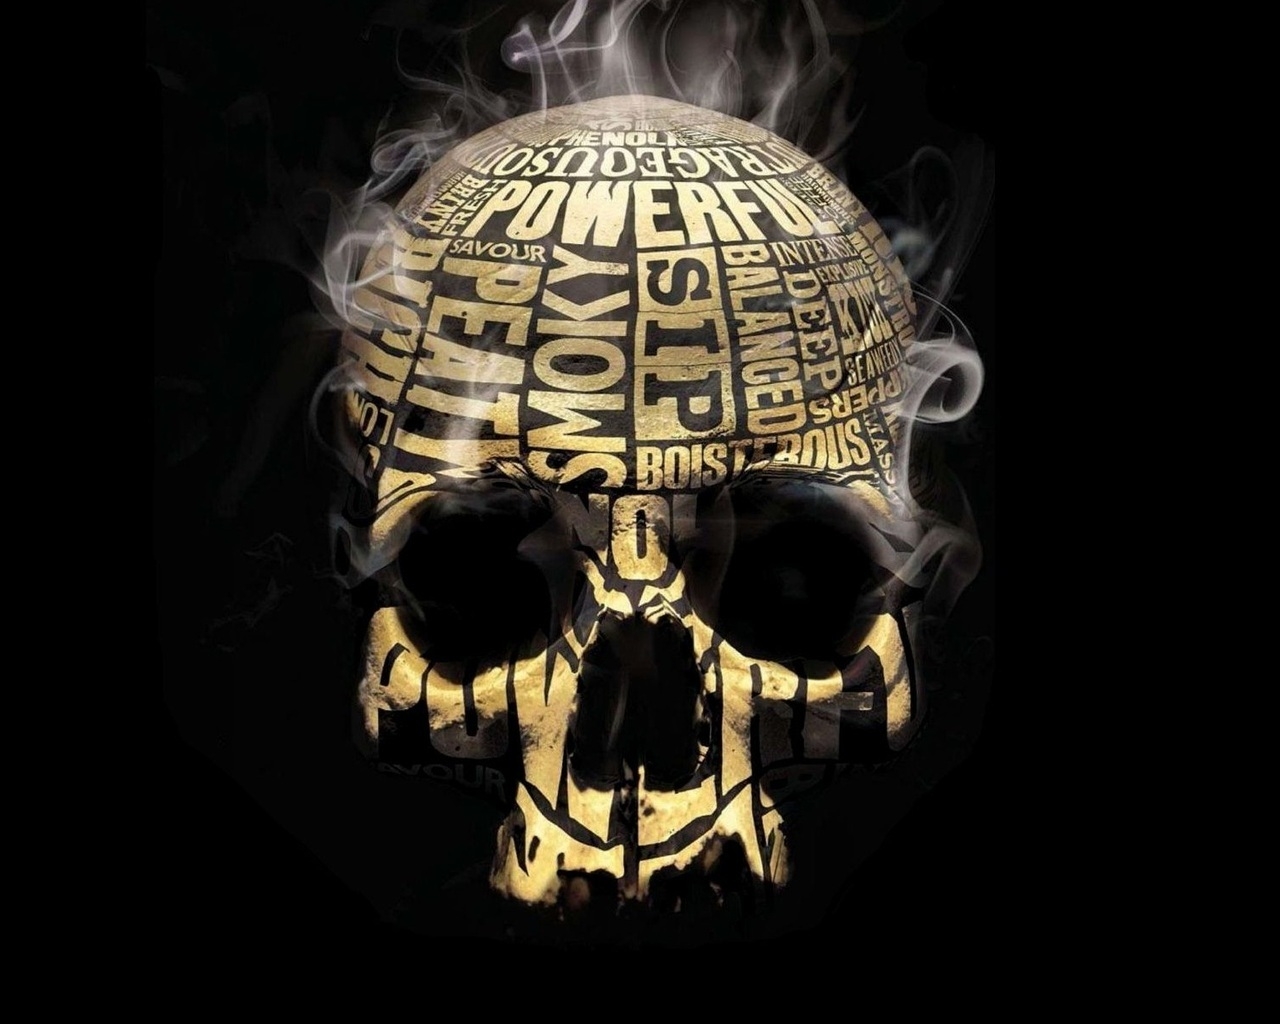 Skull Smoker for 1280 x 1024 resolution